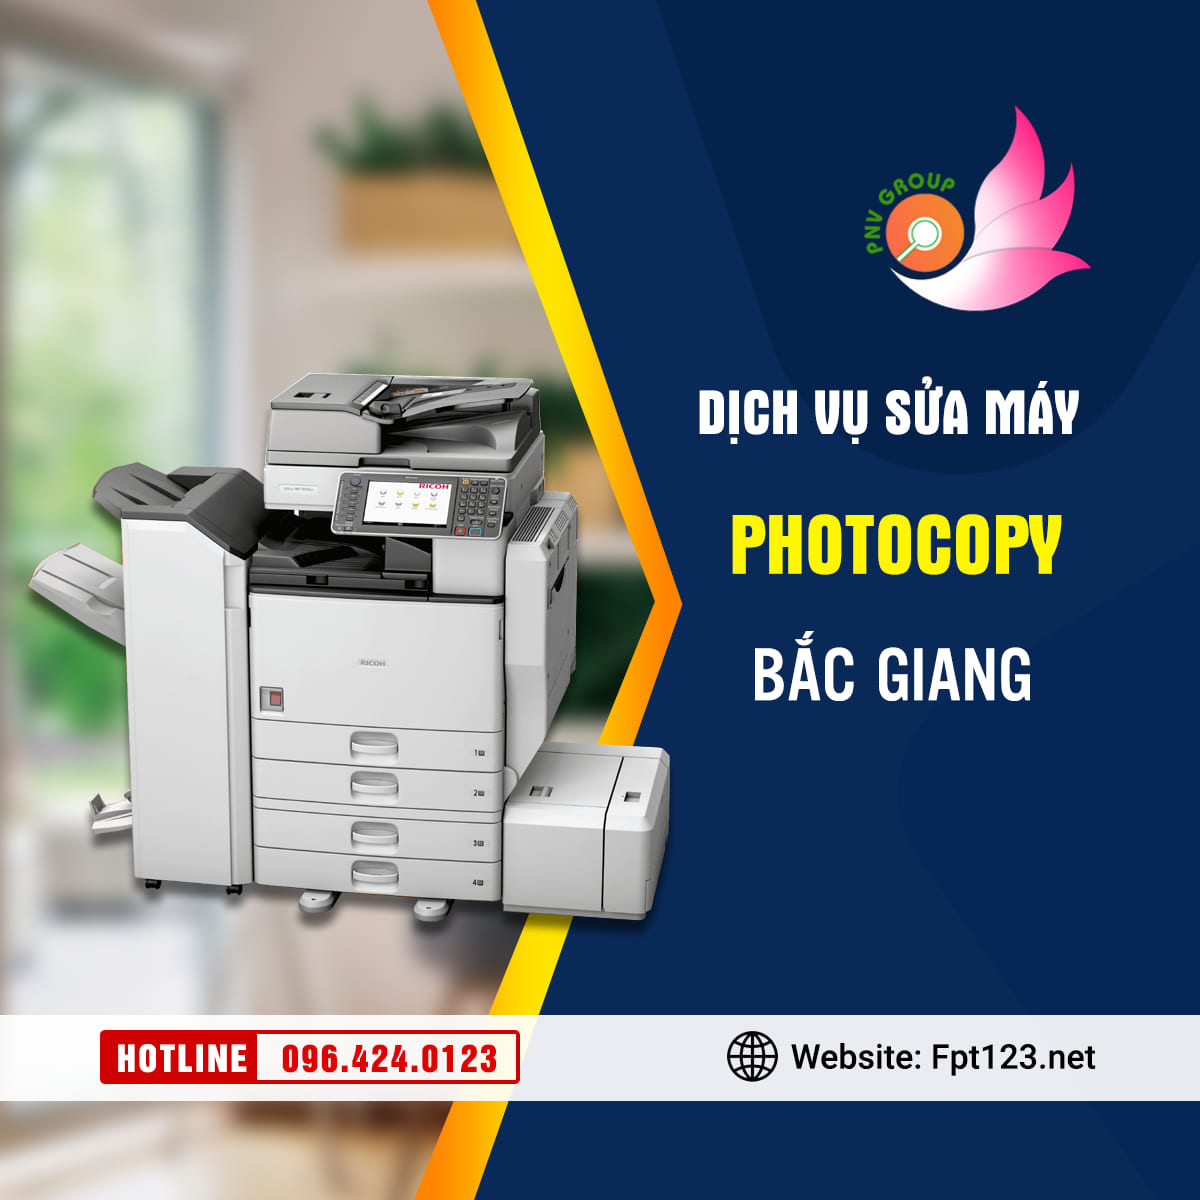 Dịch vụ sửa chữa máy photocopy tại Bắc Giang